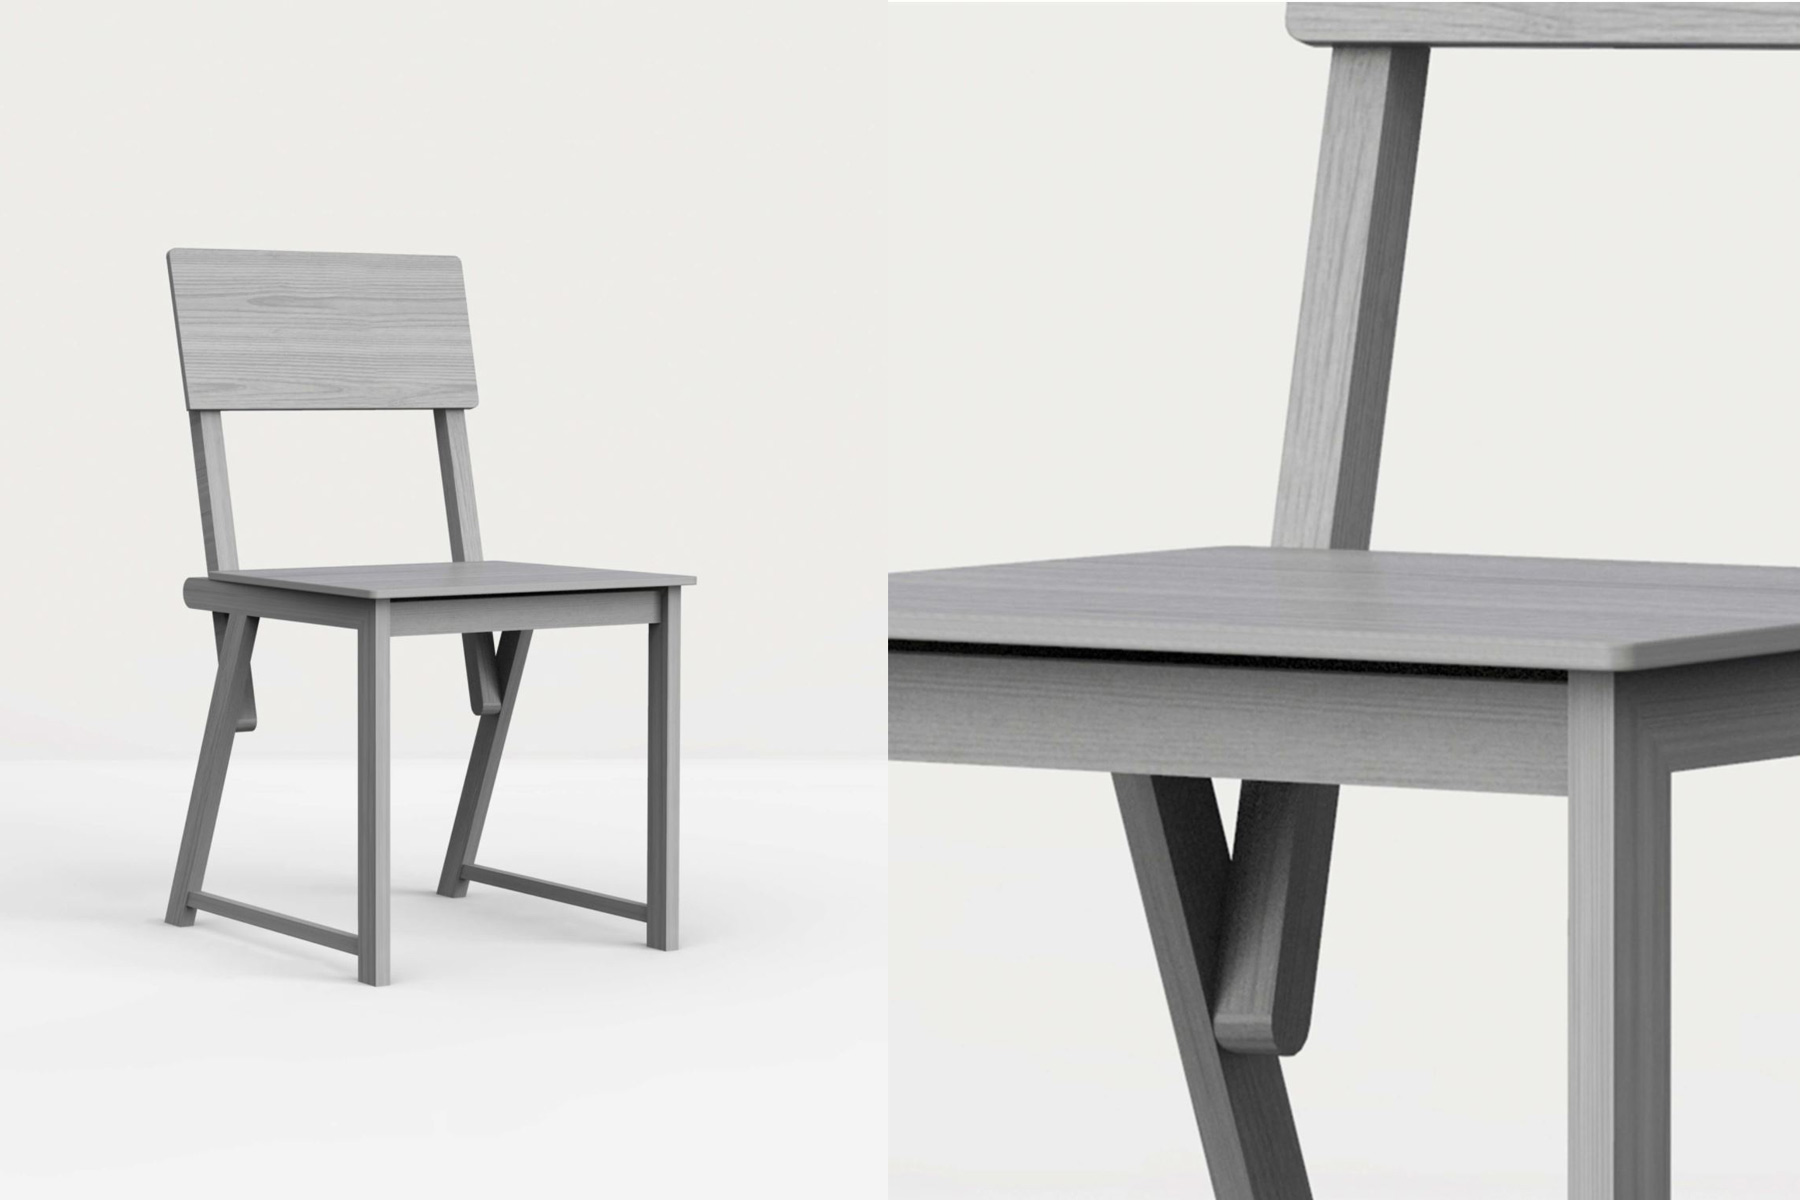 TYP Wooden Chair Designed by Ahocdrei Berlin Design Studio